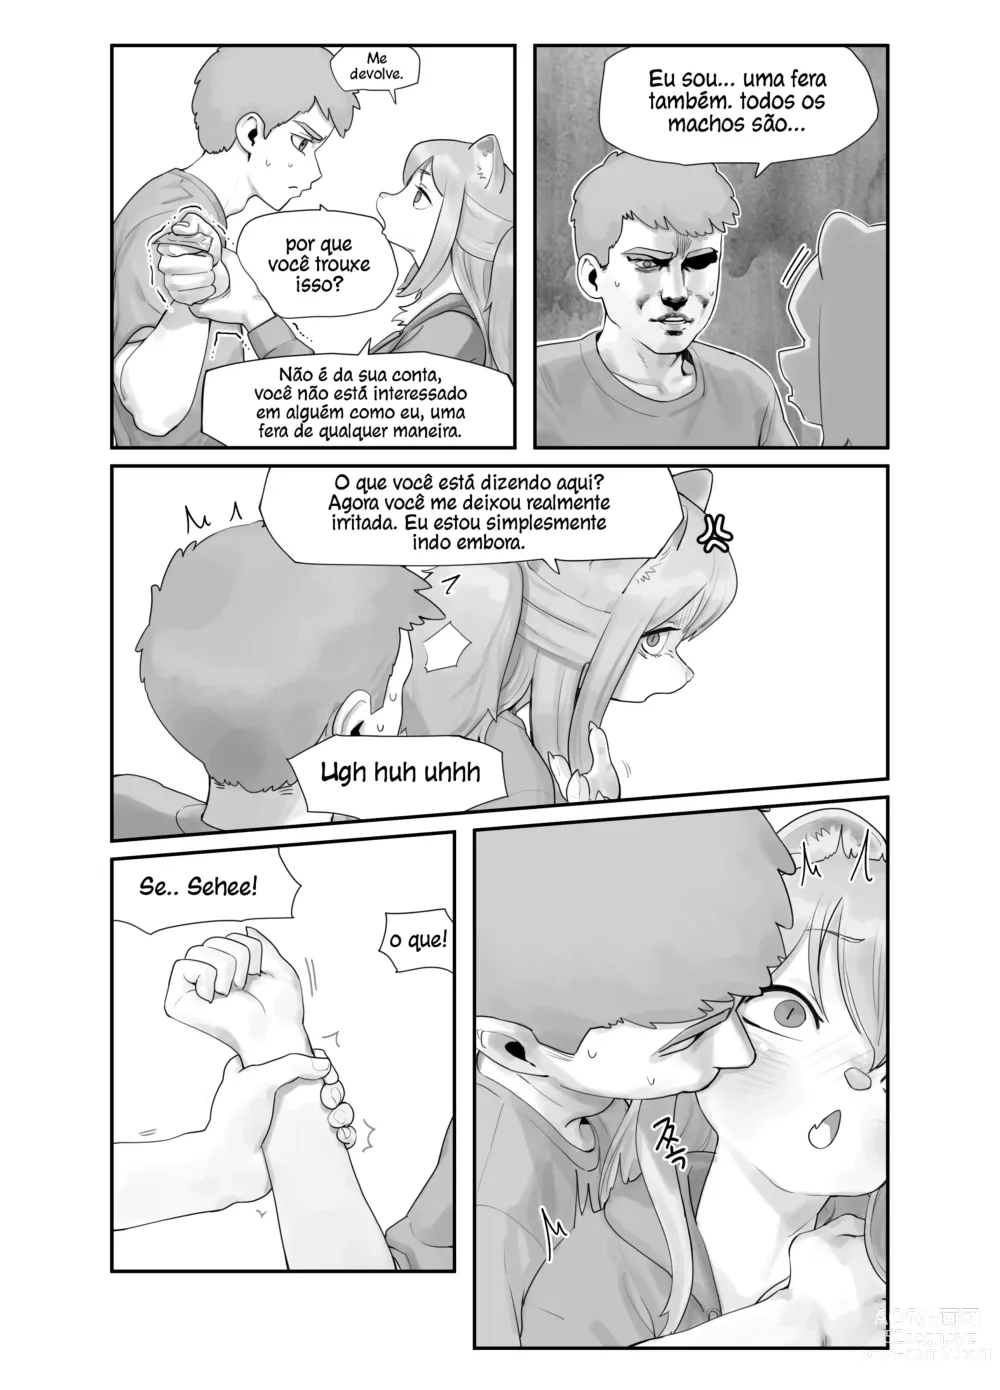 Page 5 of doujinshi Uma Amiga de Infância Suspeitosamente Erótica